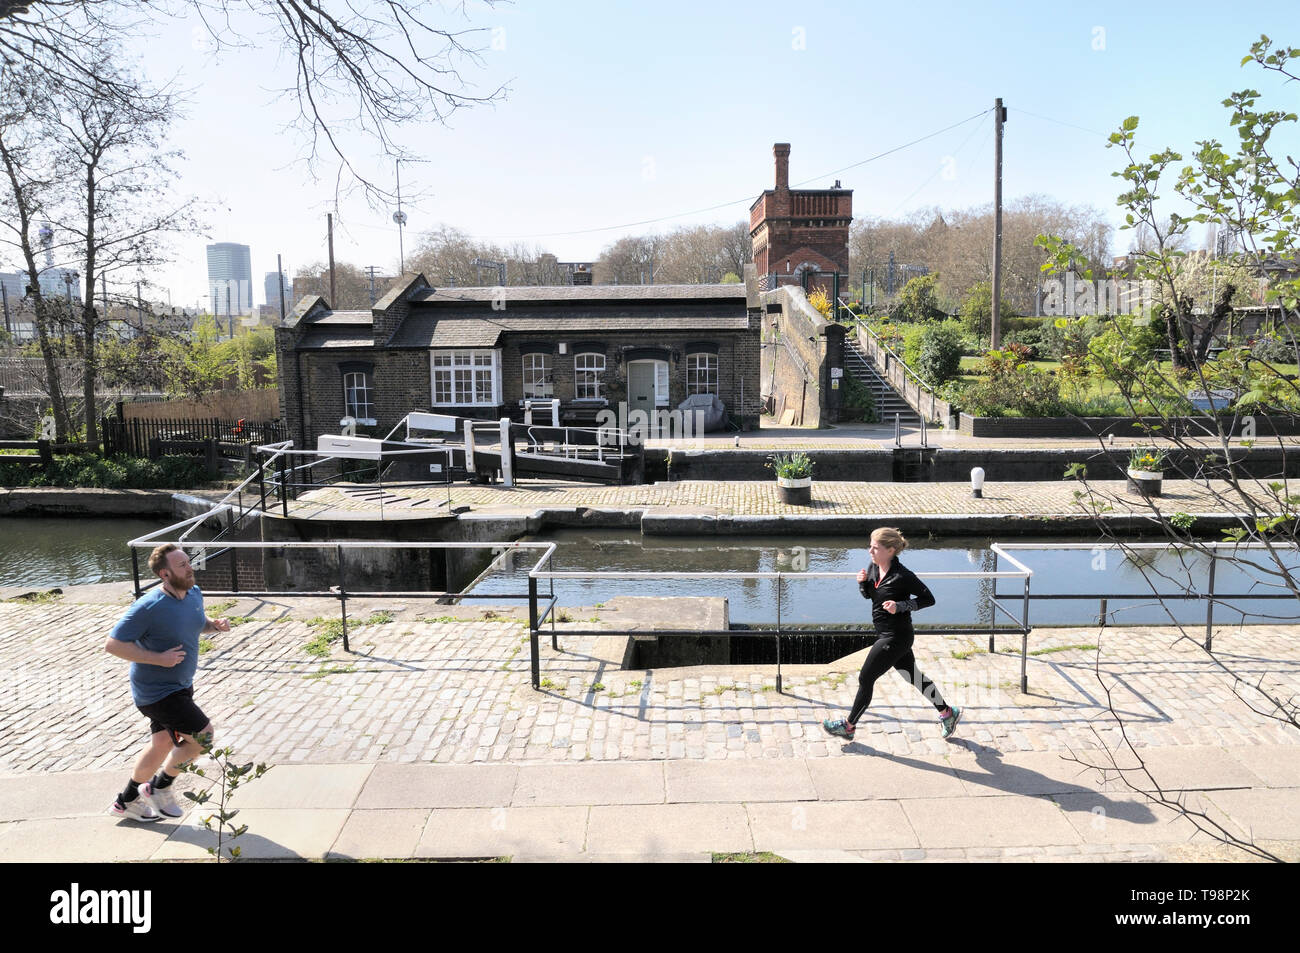 Les gens le jogging par blocage de St Pancras avec verrouillage Keepers Cottage et Waterpoint en arrière-plan, Regent's Canal, King's Cross, Londres, Angleterre, Royaume-Uni Banque D'Images